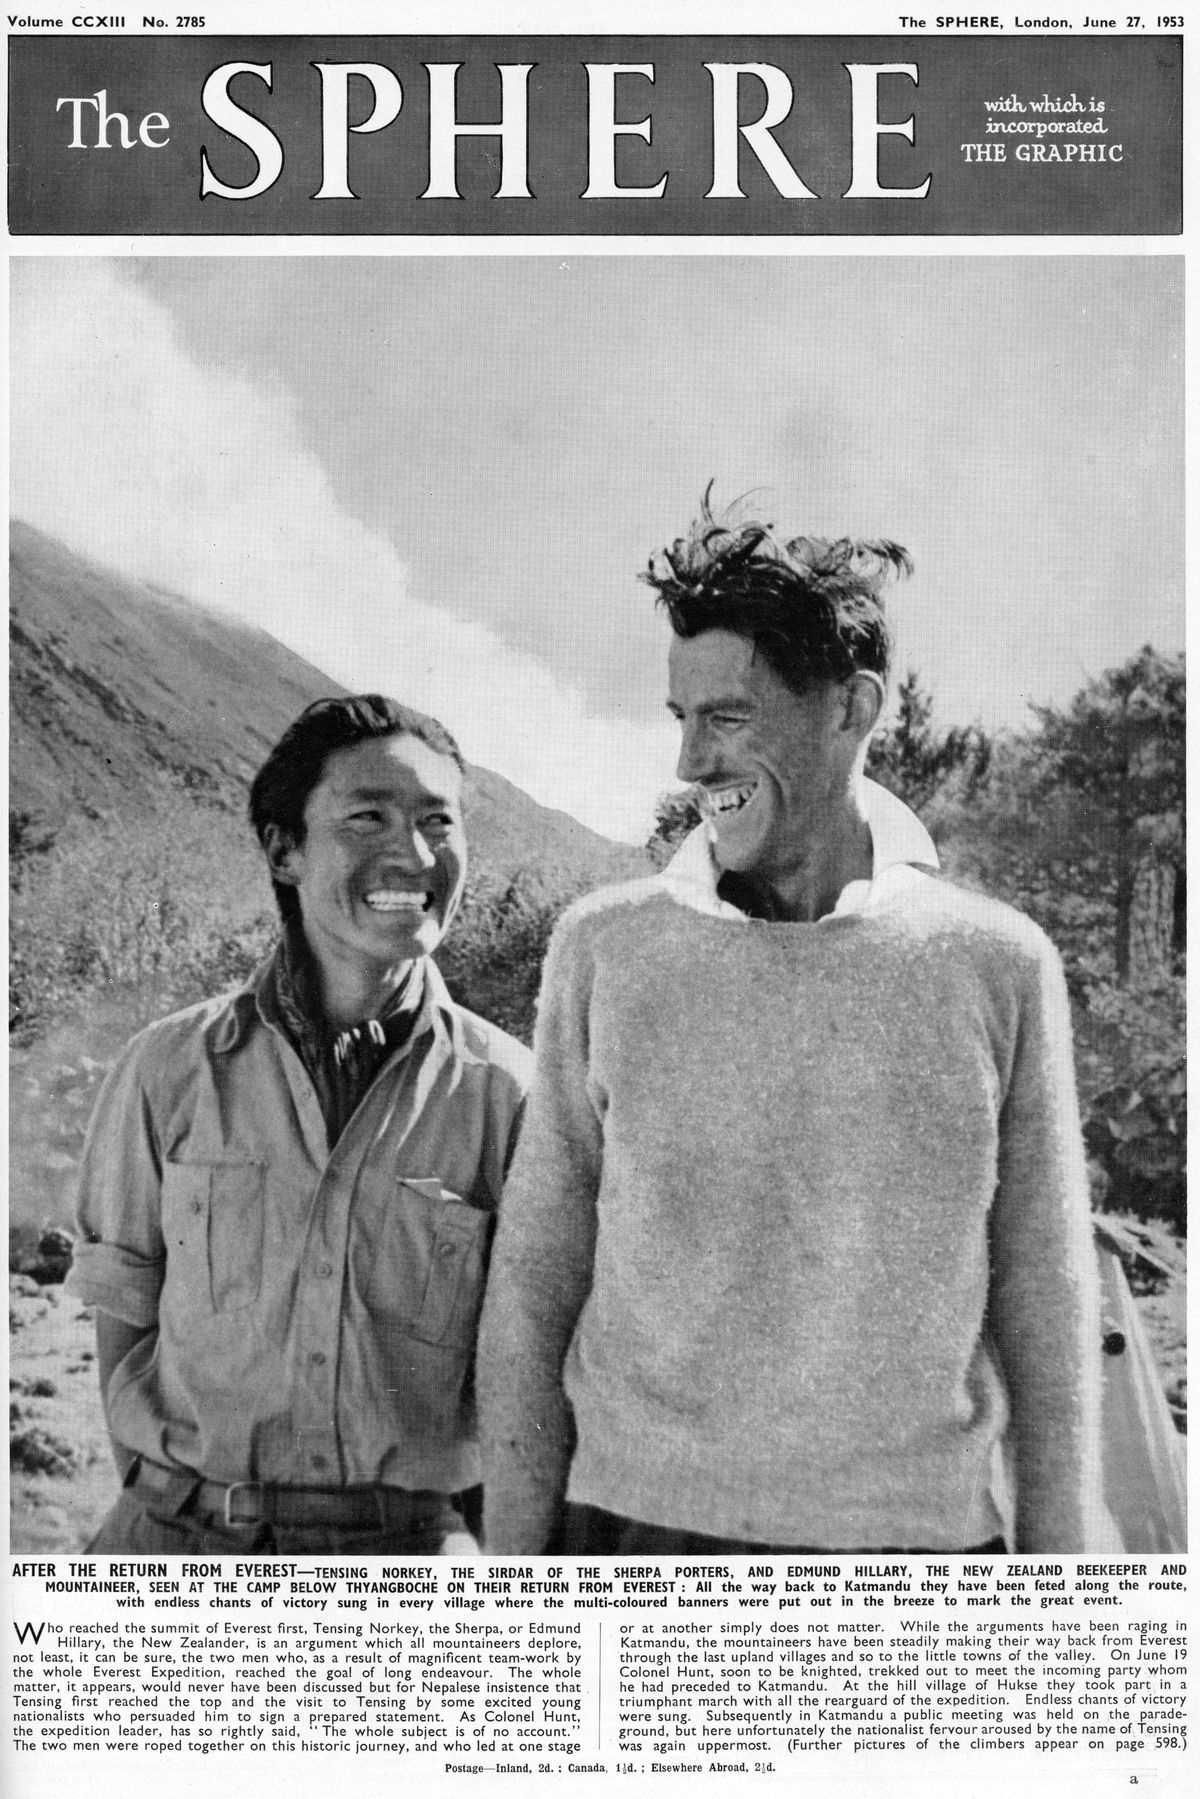 Edmund Hillary ja Tenzing Norgay väljaande The Sphere esikaanel. Nad jõudsid Džomolungma tippu 29. mail 1953.